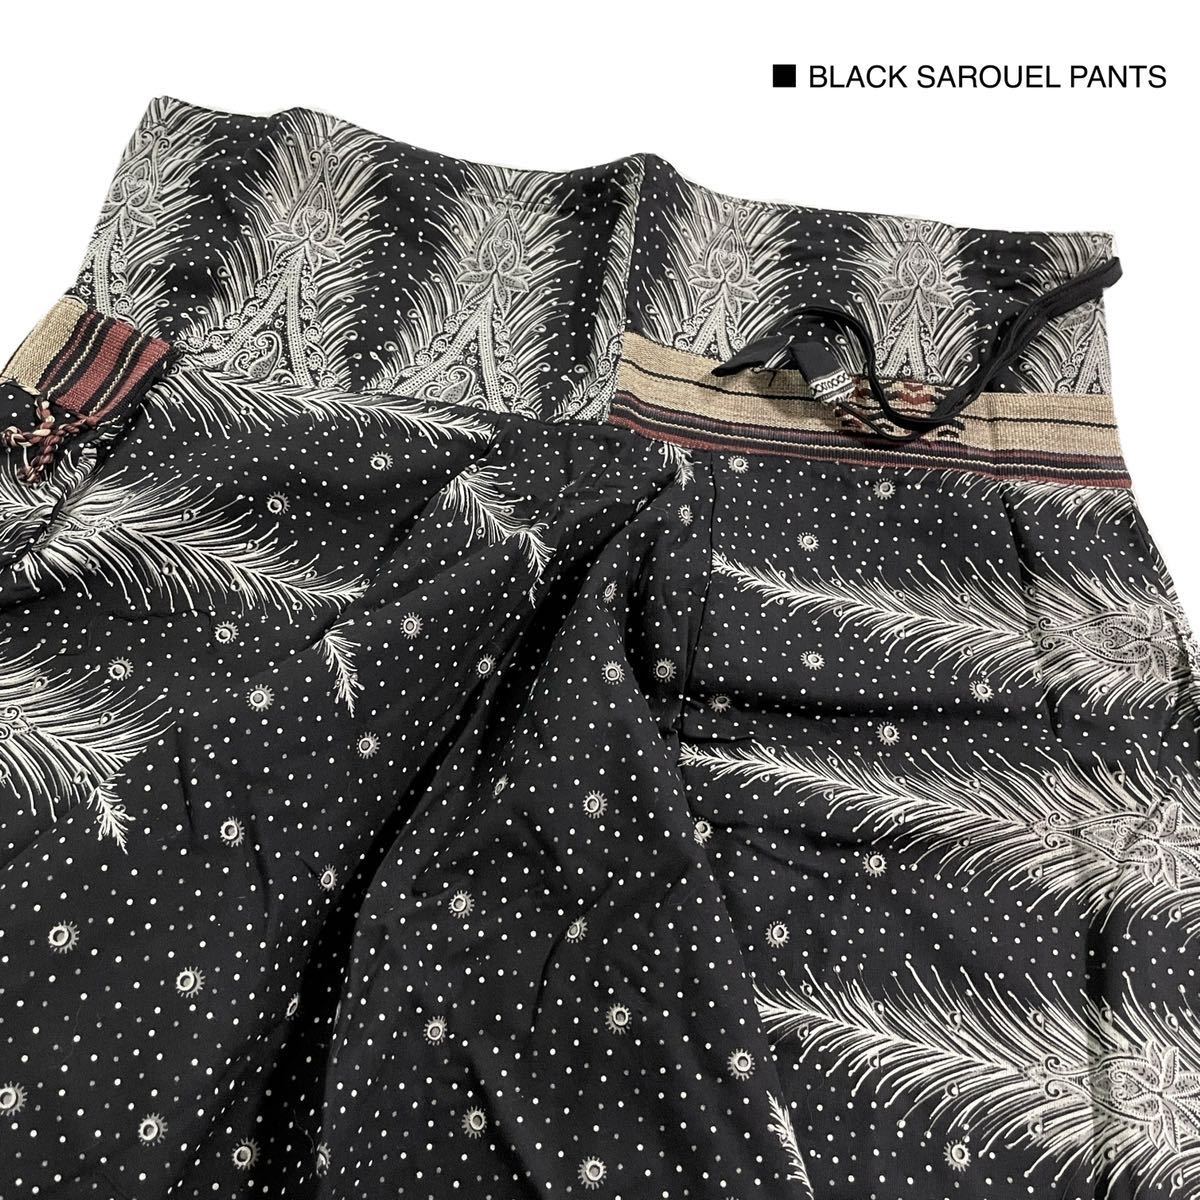  новый товар не использовался Asian hakama брюки шаровары гаучо брюки широкий брюки шорты шорты режим свободный размер 